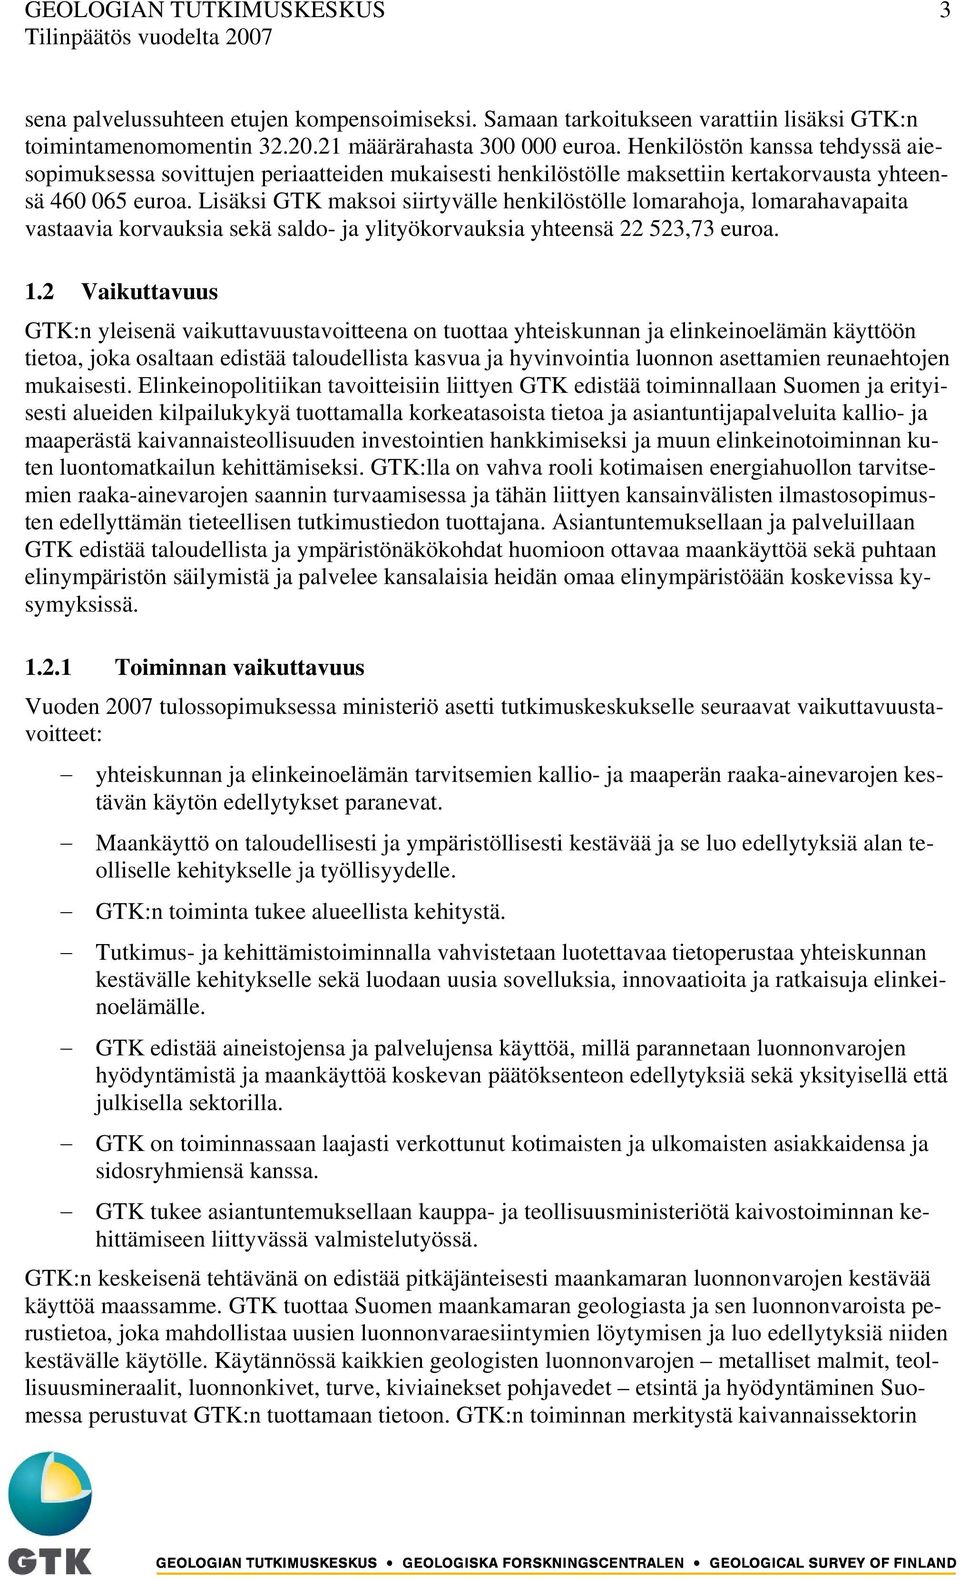 Lisäksi GTK maksoi siirtyvälle henkilöstölle lomarahoja, lomarahavapaita vastaavia korvauksia sekä saldo- ja ylityökorvauksia yhteensä 22 523,73 euroa. 1.